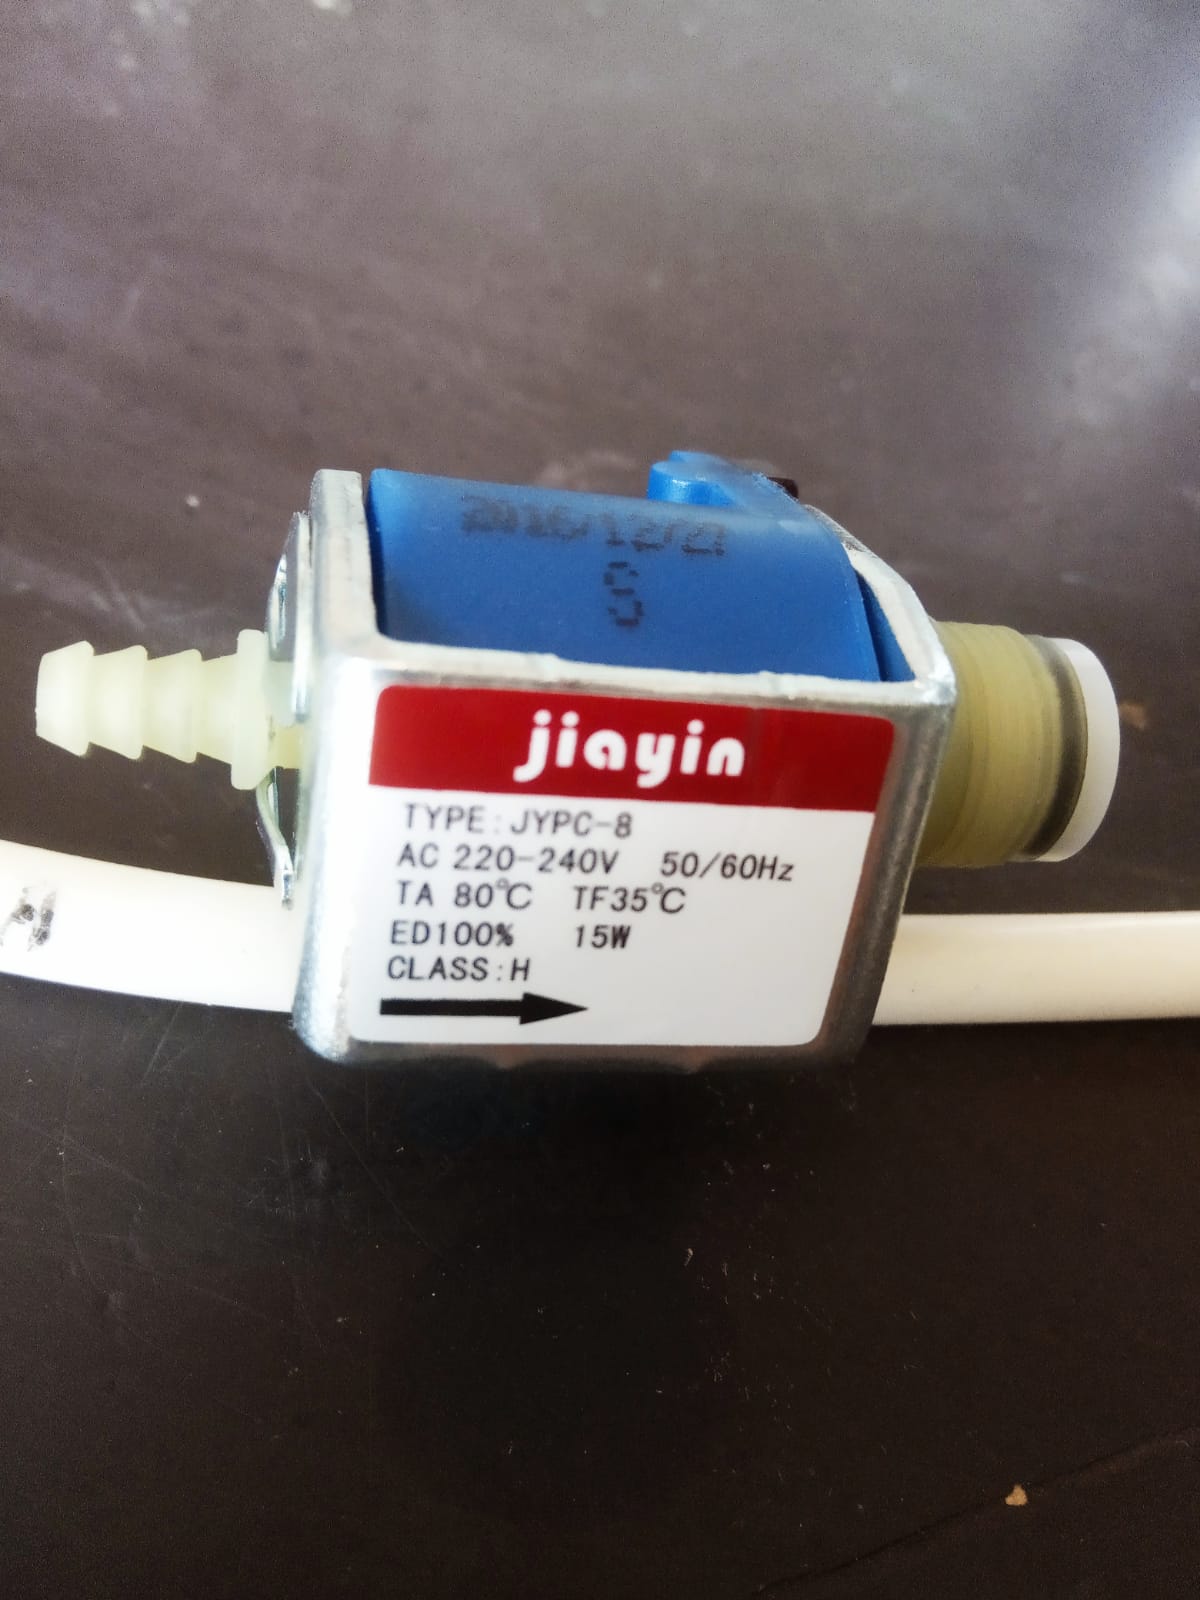 JYPC-8 jiayin valve new original